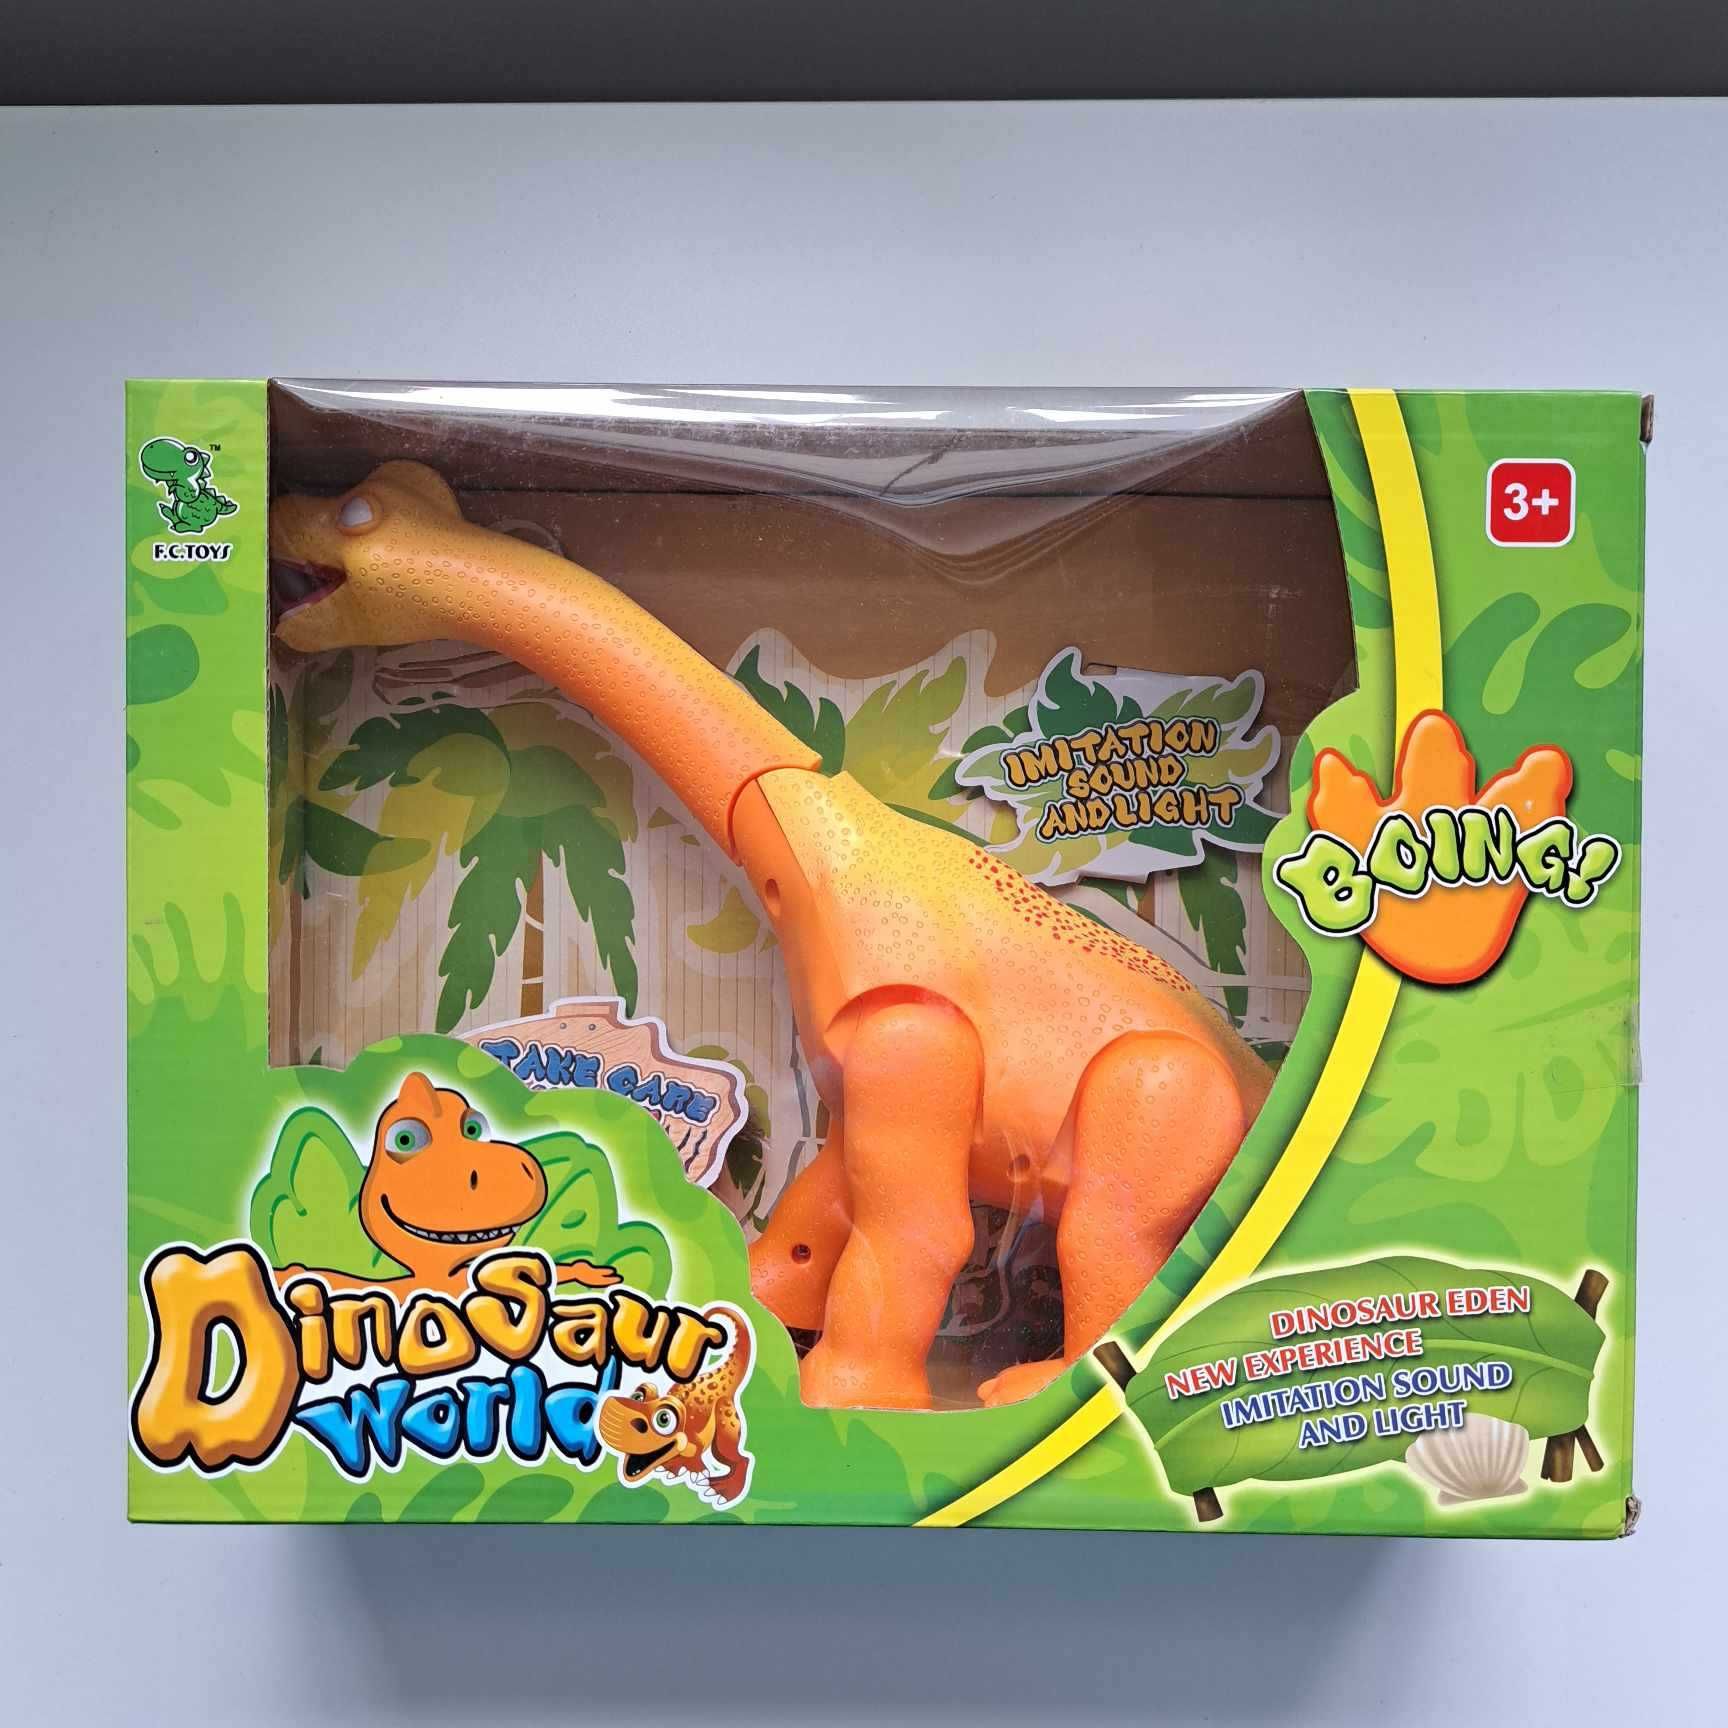 Dinozaur chodzi ryczy swieci